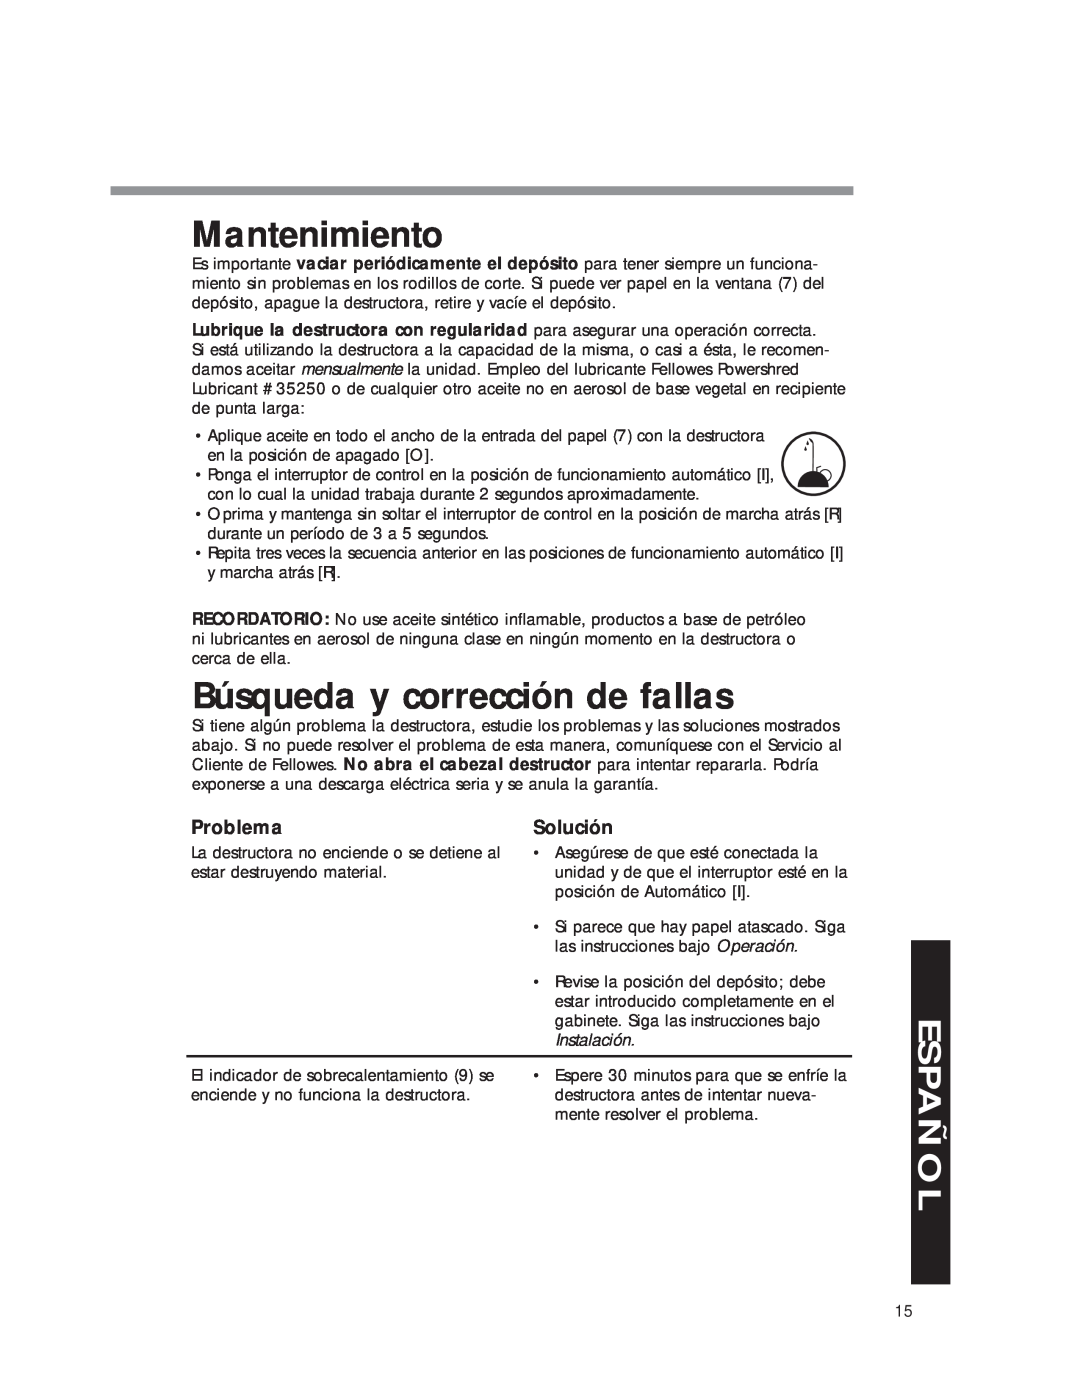 Fellowes DM8C manual Mantenimiento, Búsqueda y corrección de fallas, Problema, Solución, Instalación, Español 